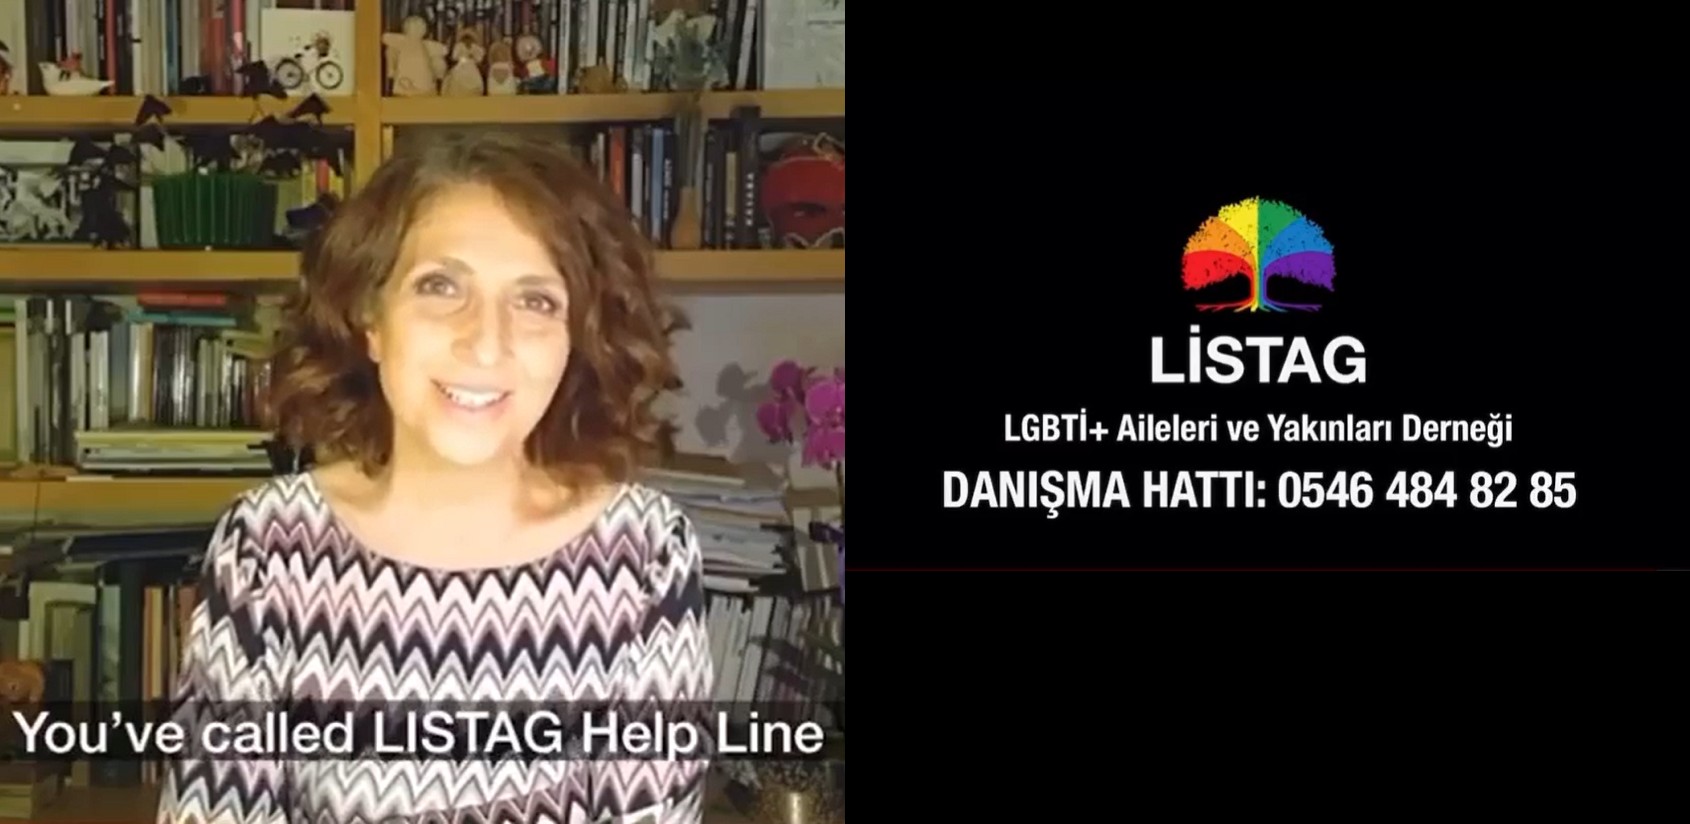 LİSTAG Danışma Hattı: “Bizi aramaktan çekinmeyin” Kaos GL - LGBTİ+ Haber Portalı